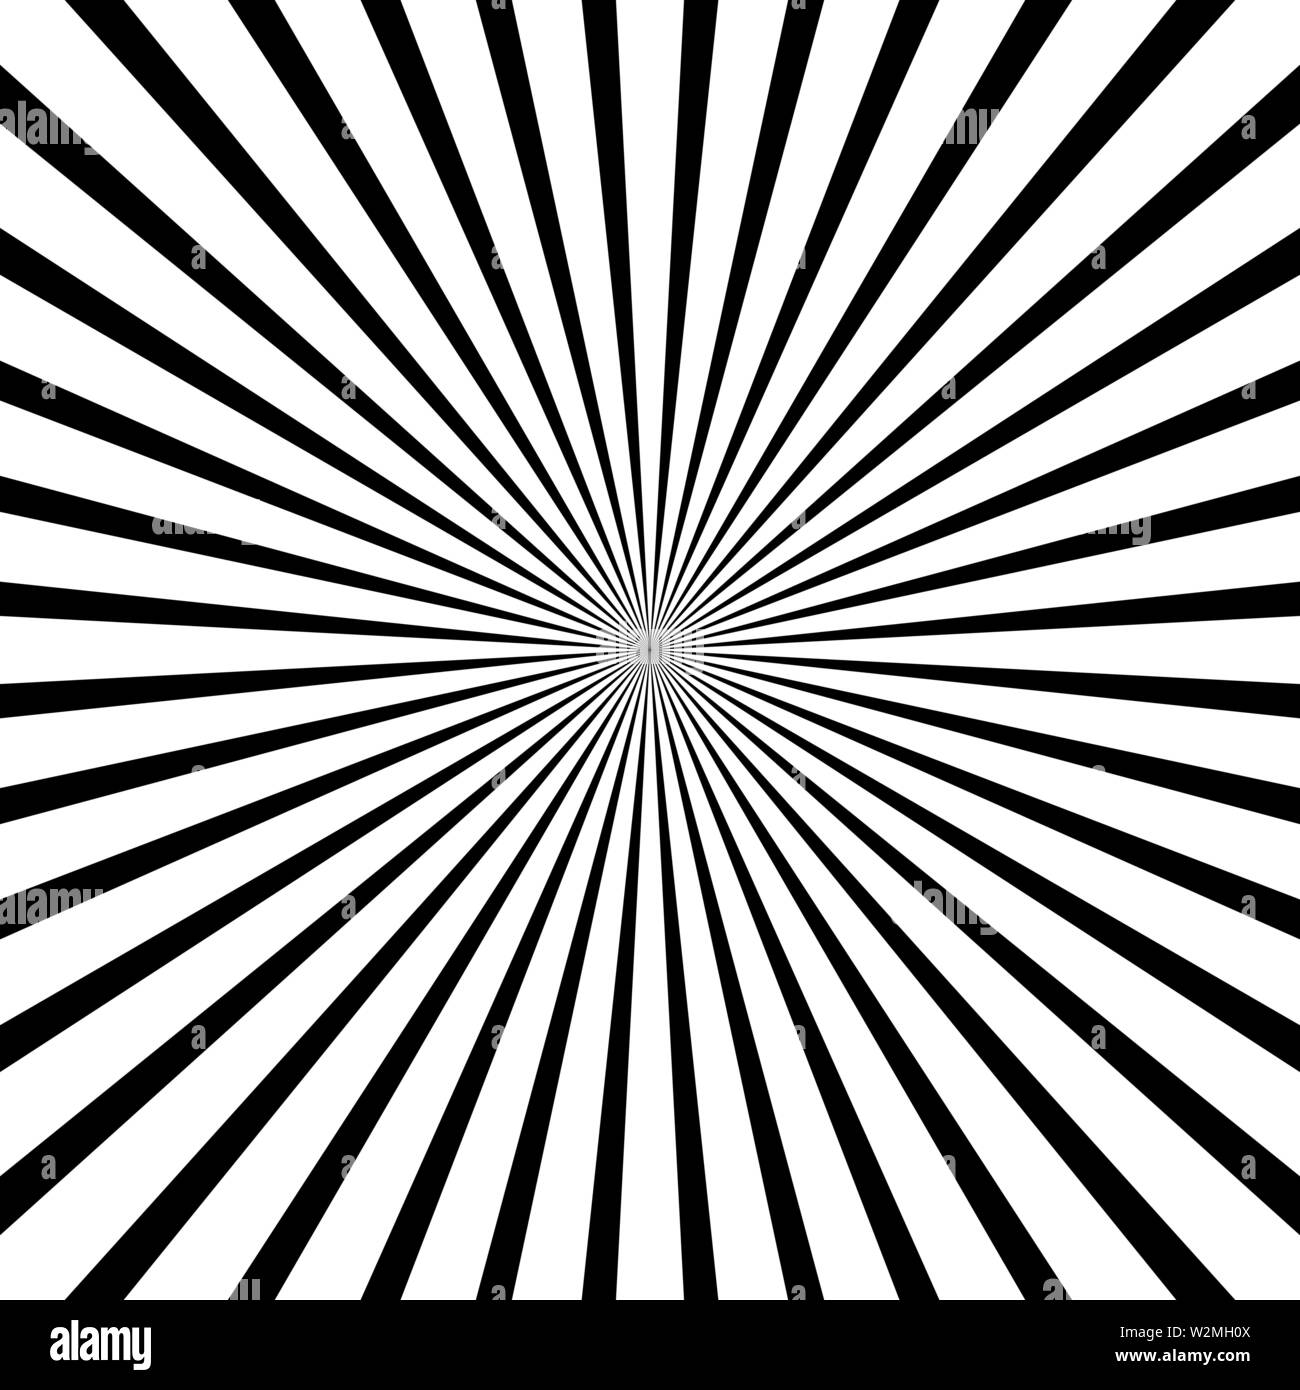 Schwarze und weiße radiale Linien optische Illusion Vektorgrafik Stock Vektor